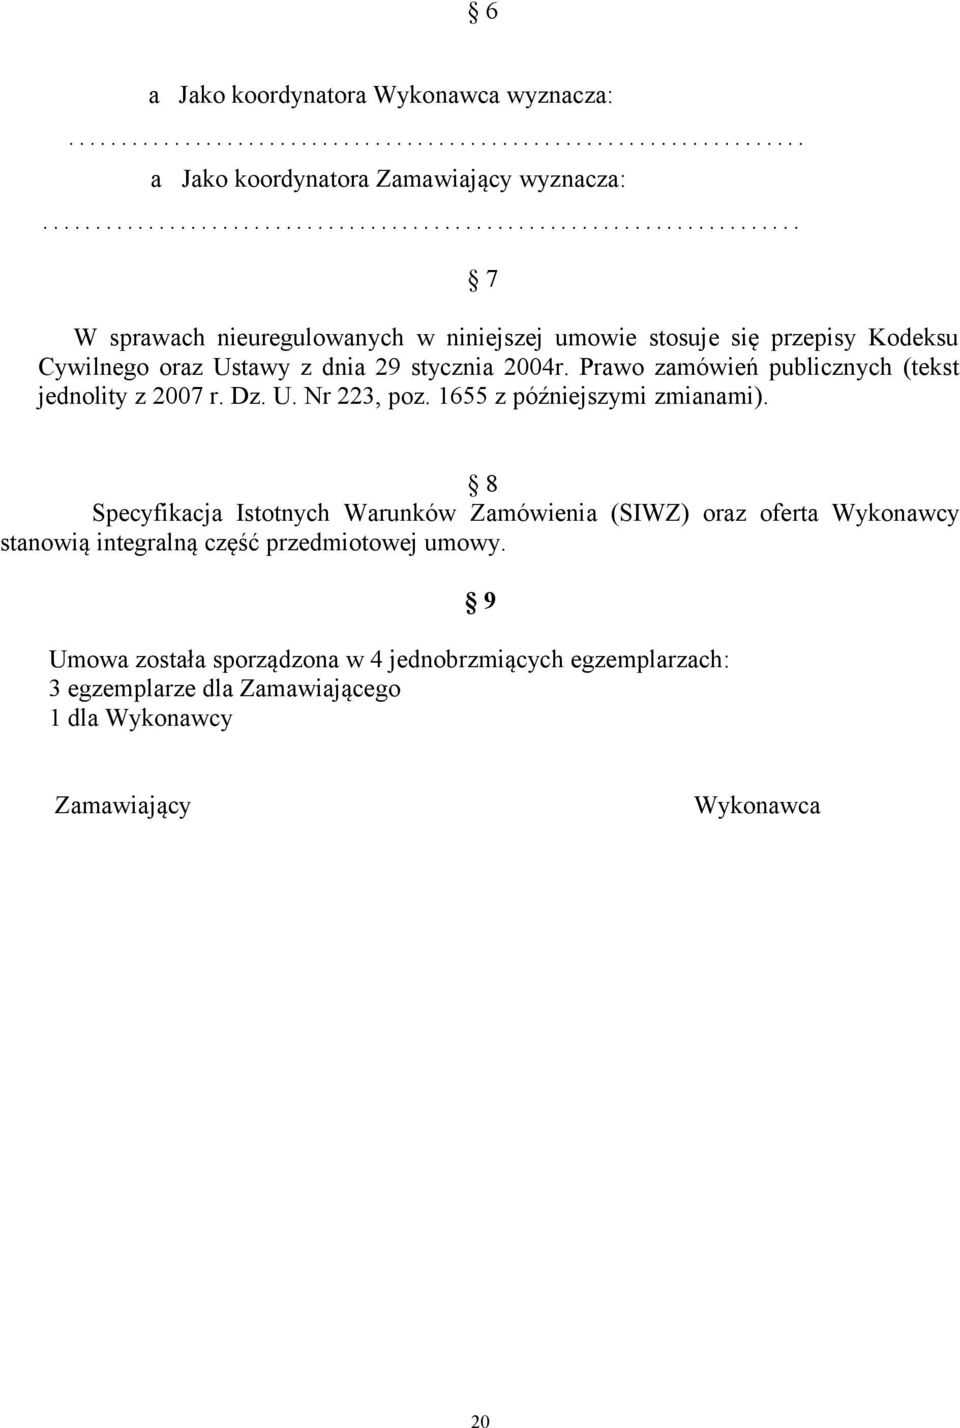 Prawo zamówień publicznych (tekst jednolity z 2007 r. Dz. U. Nr 223, poz. 1655 z późniejszymi zmianami).